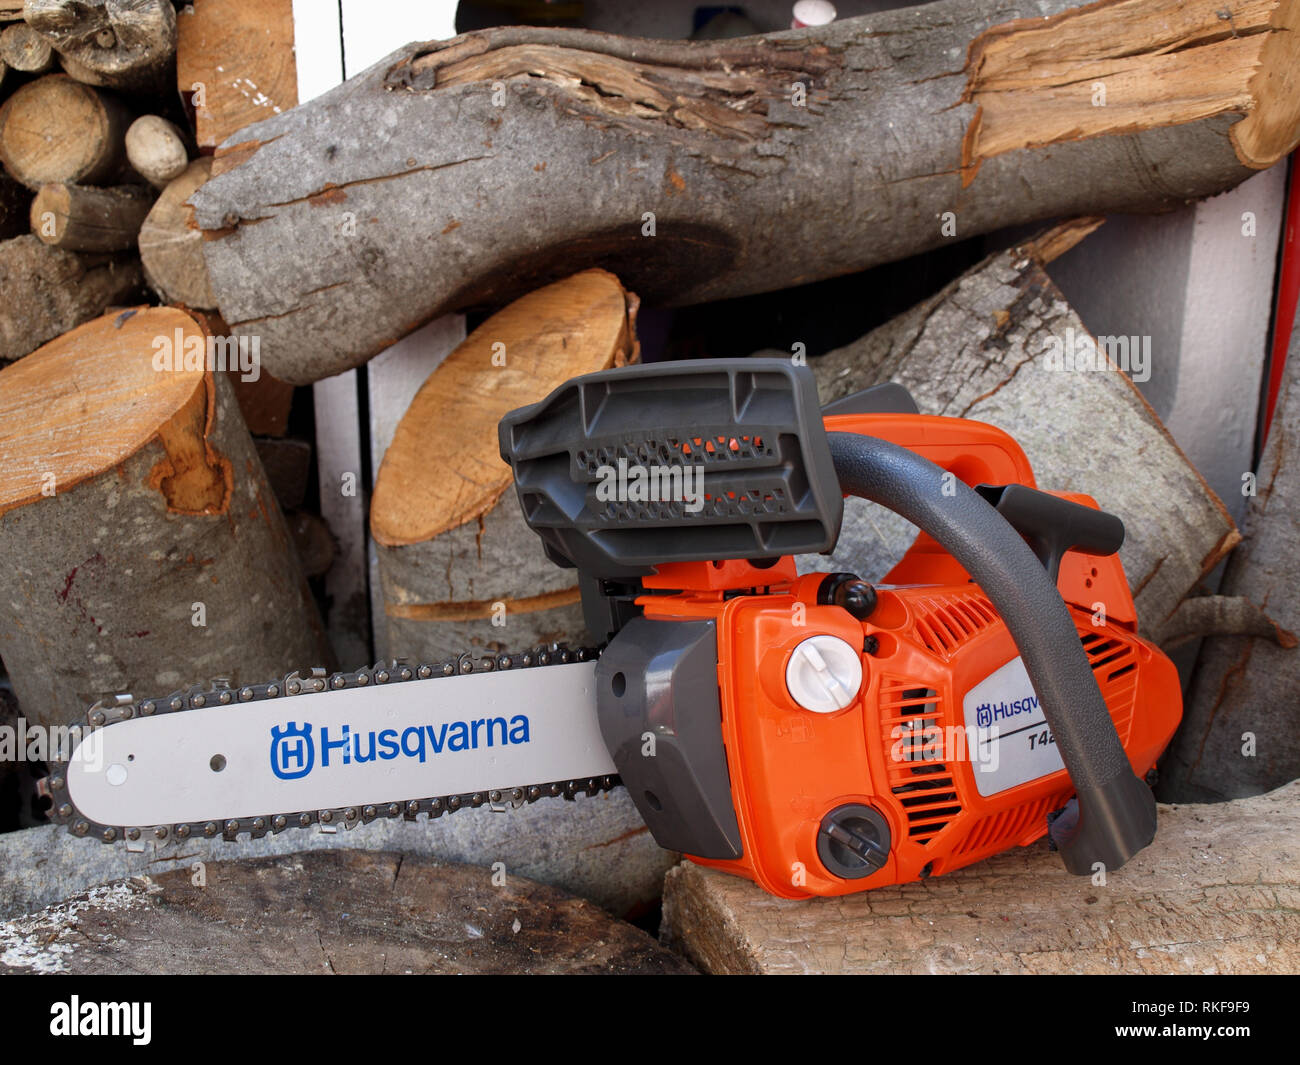 Nuovo di zecca Husqvarna T425 sega a catena su woodpile pronto per l'uso  Foto stock - Alamy